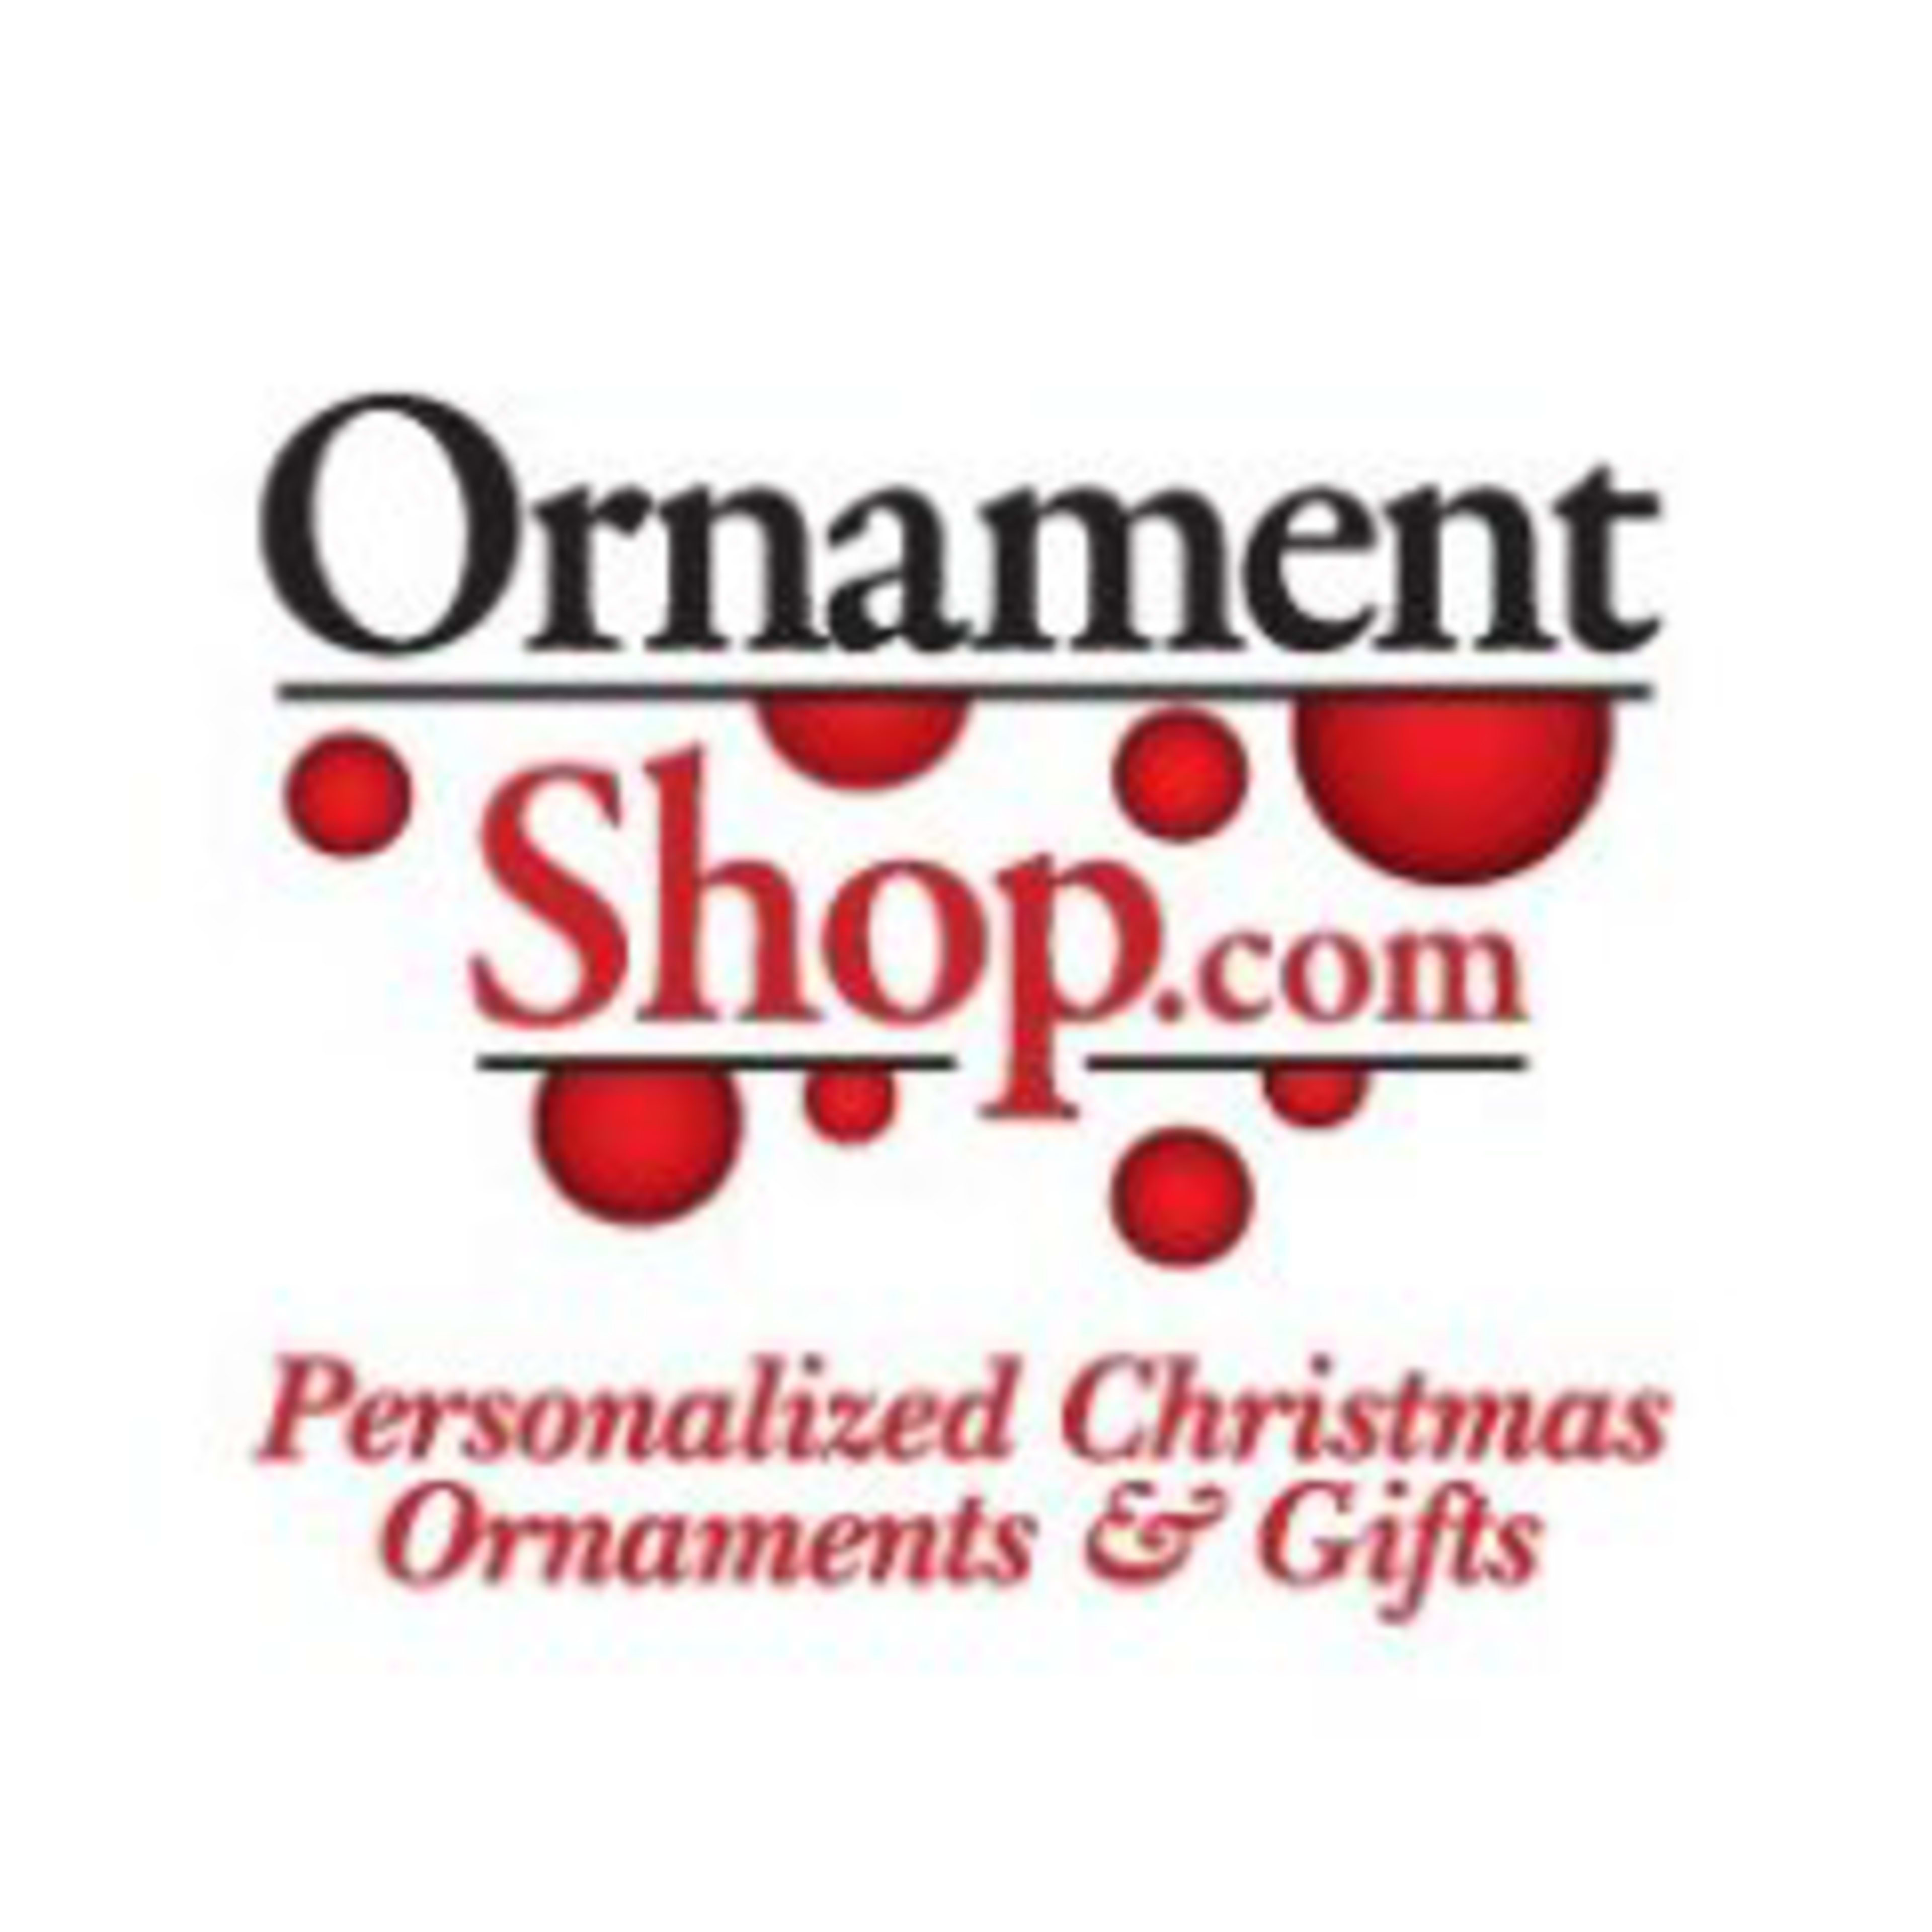 OrnamentShop.com Code